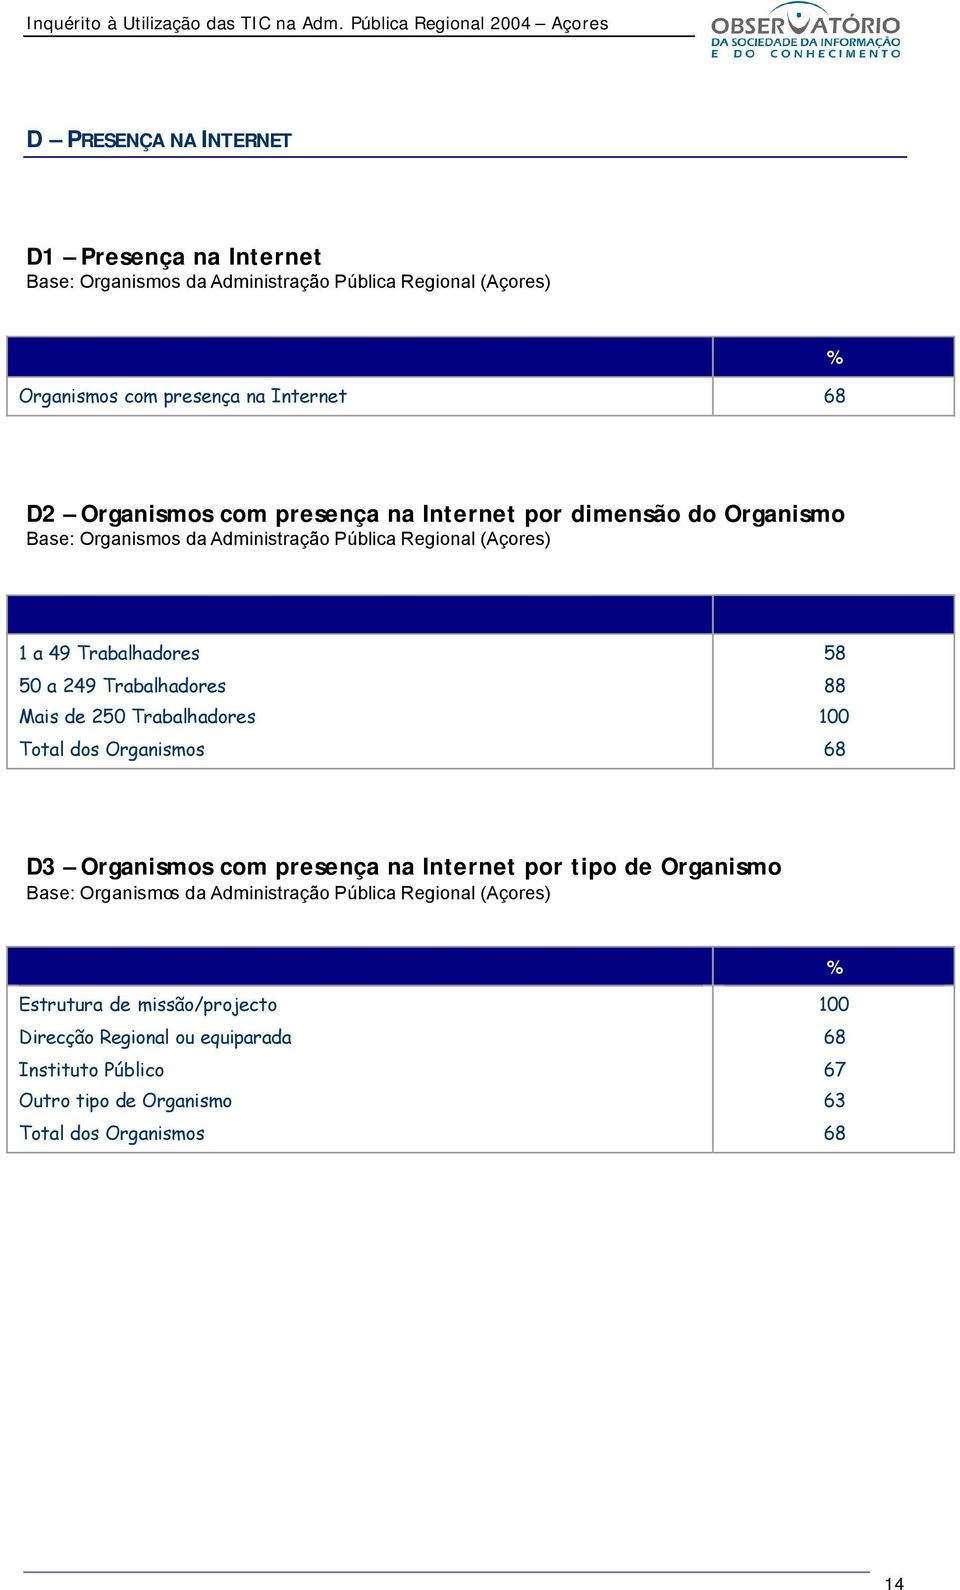 Total dos Organismos 58 88 68 D3 Organismos com presença na Internet por tipo de Organismo Estrutura de